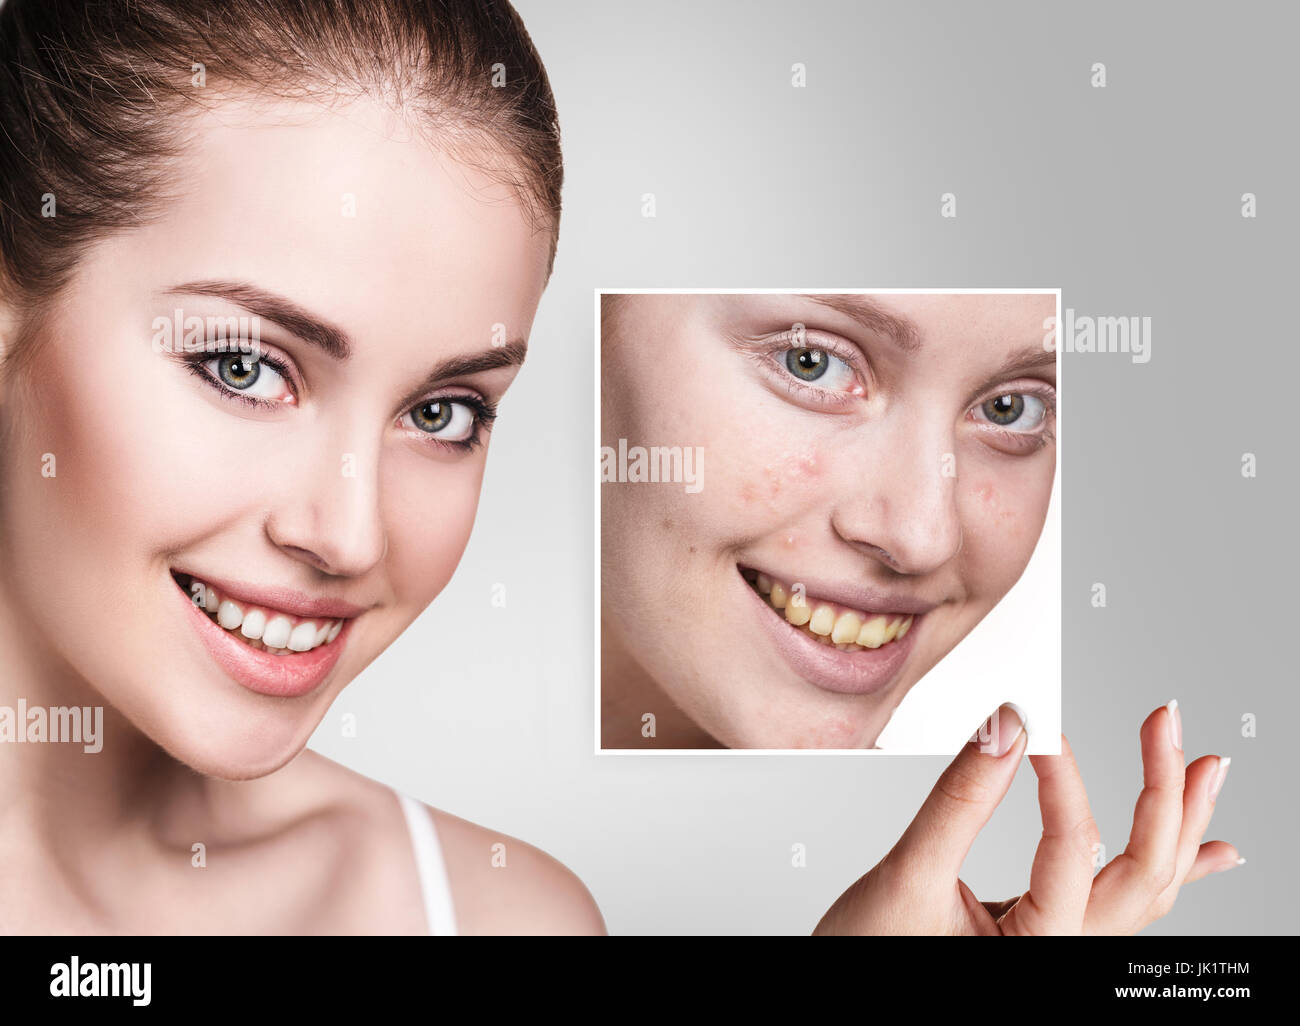 Frau zeigt Fotos mit unreiner Haut vor der Behandlung. Stockfoto